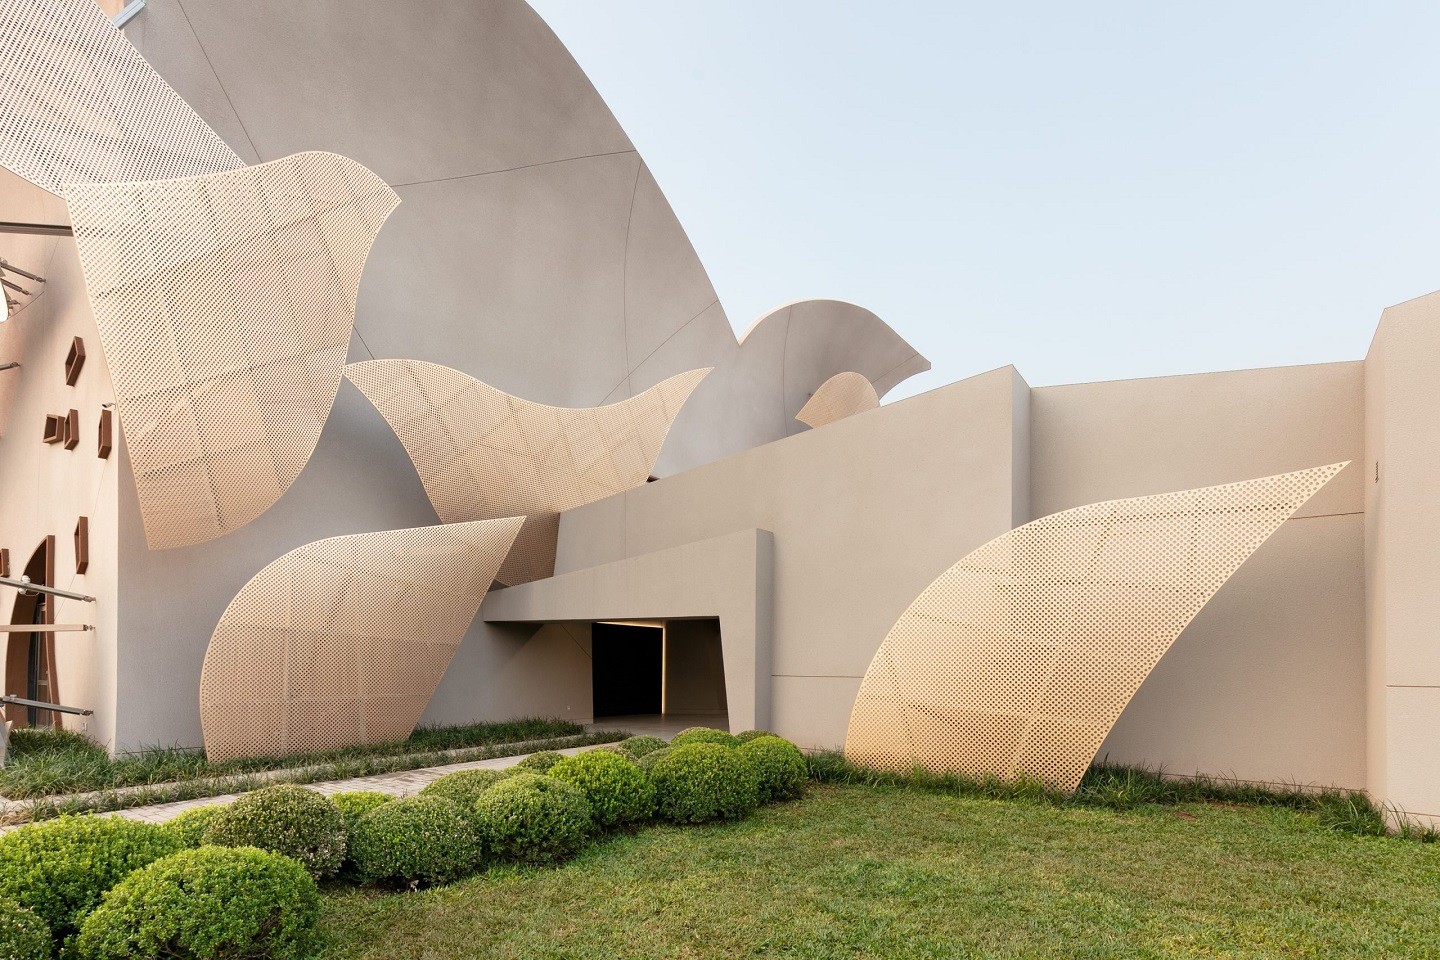 Novo crematório em Campo Grande chama atenção nas redes sociais com arquitetura fora do convencional (Foto:  )